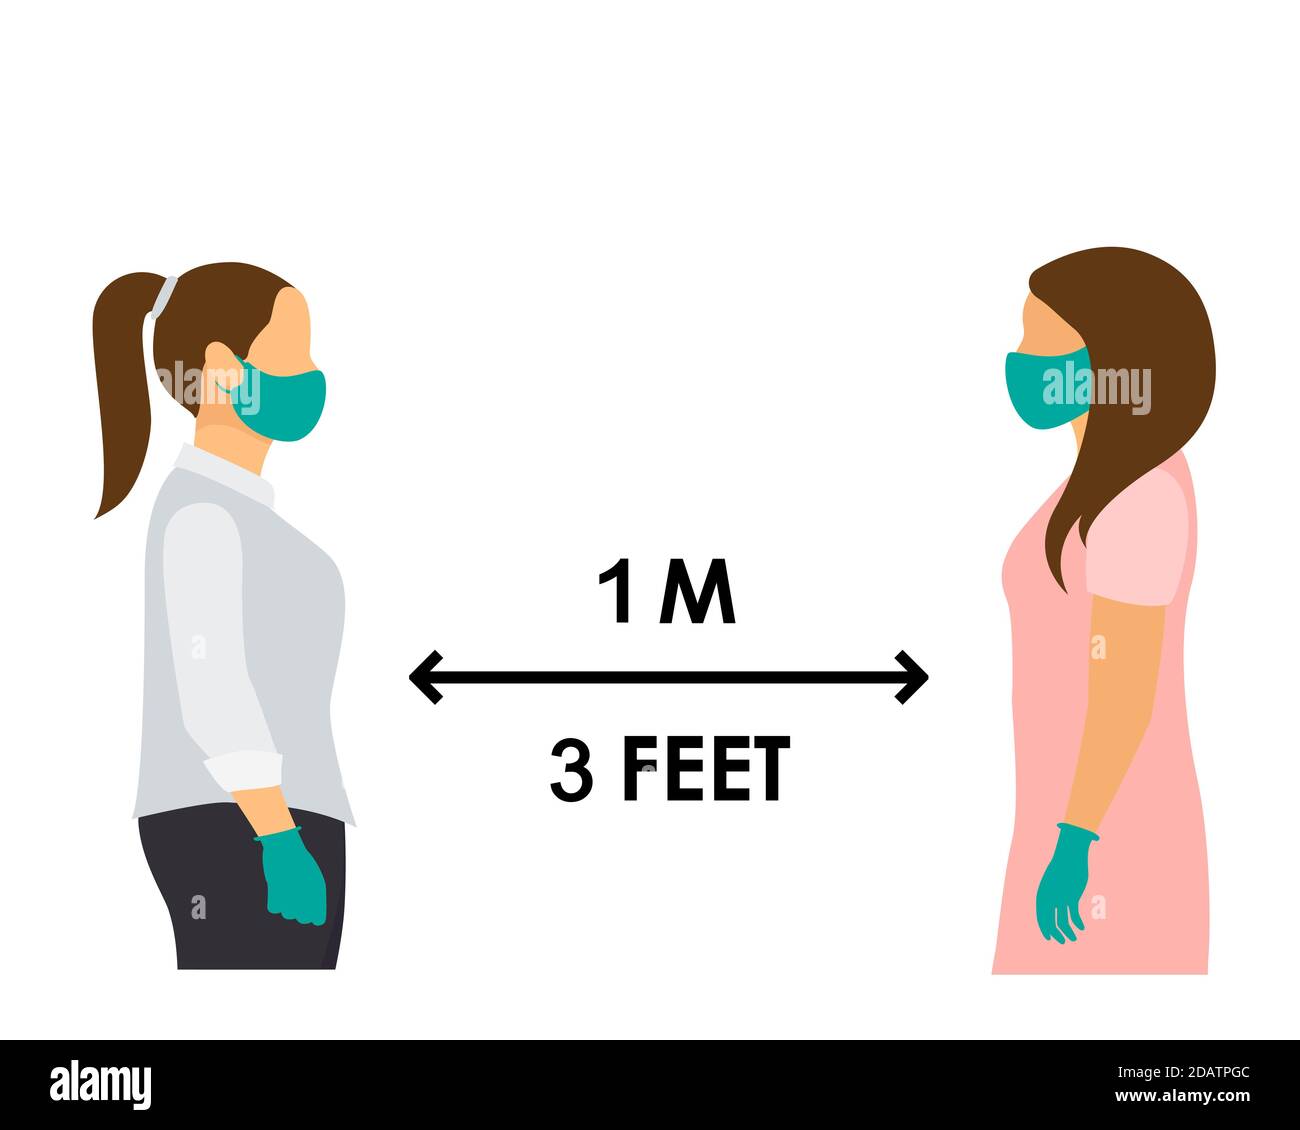 Zwei Frauen mit medizinischen Masken und Handschuhen stehen einen Meter oder drei Fuß entfernt. Flache Vektordarstellung Stock Vektor